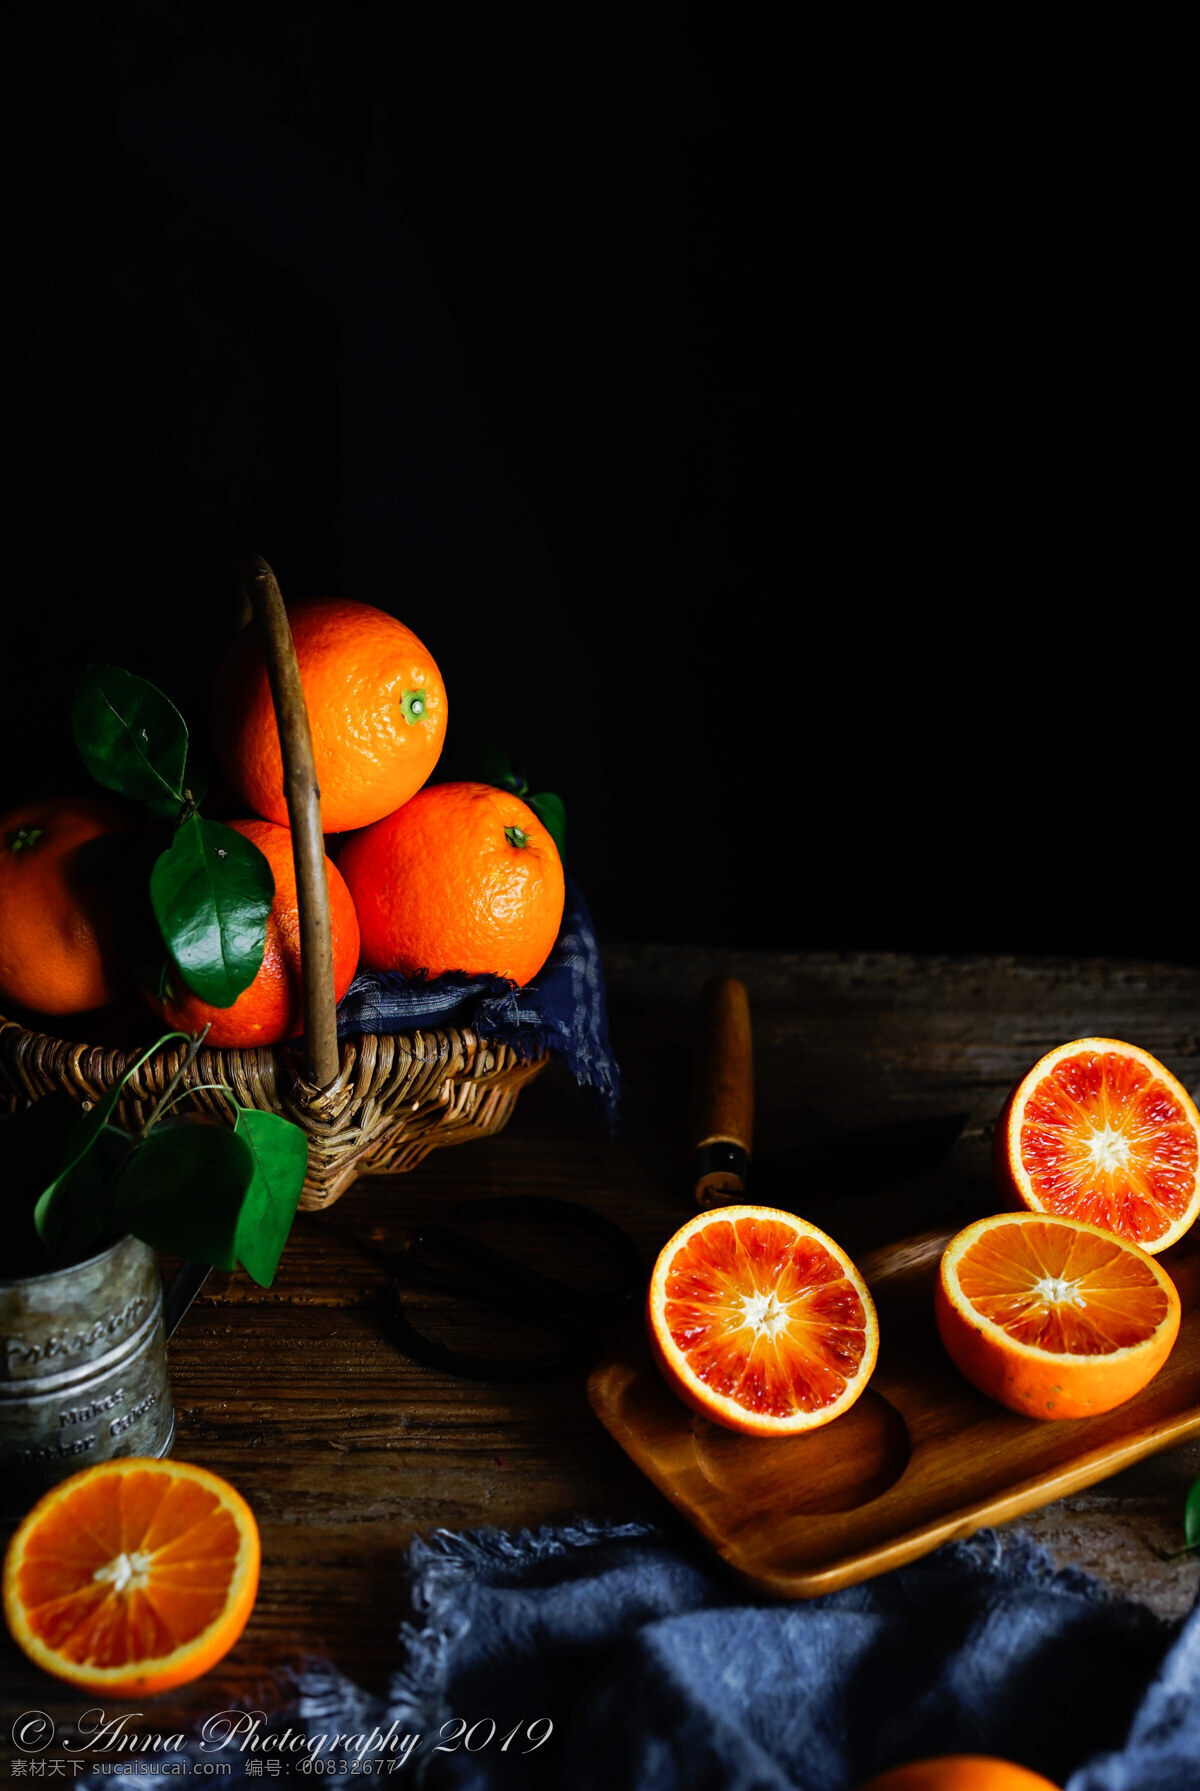 血橙 橙子 切开的橘子 血橙子 四川橙子 中国水果 柑橘 橘子 丑橘 沃柑 苷类 水果 餐饮美食 传统美食